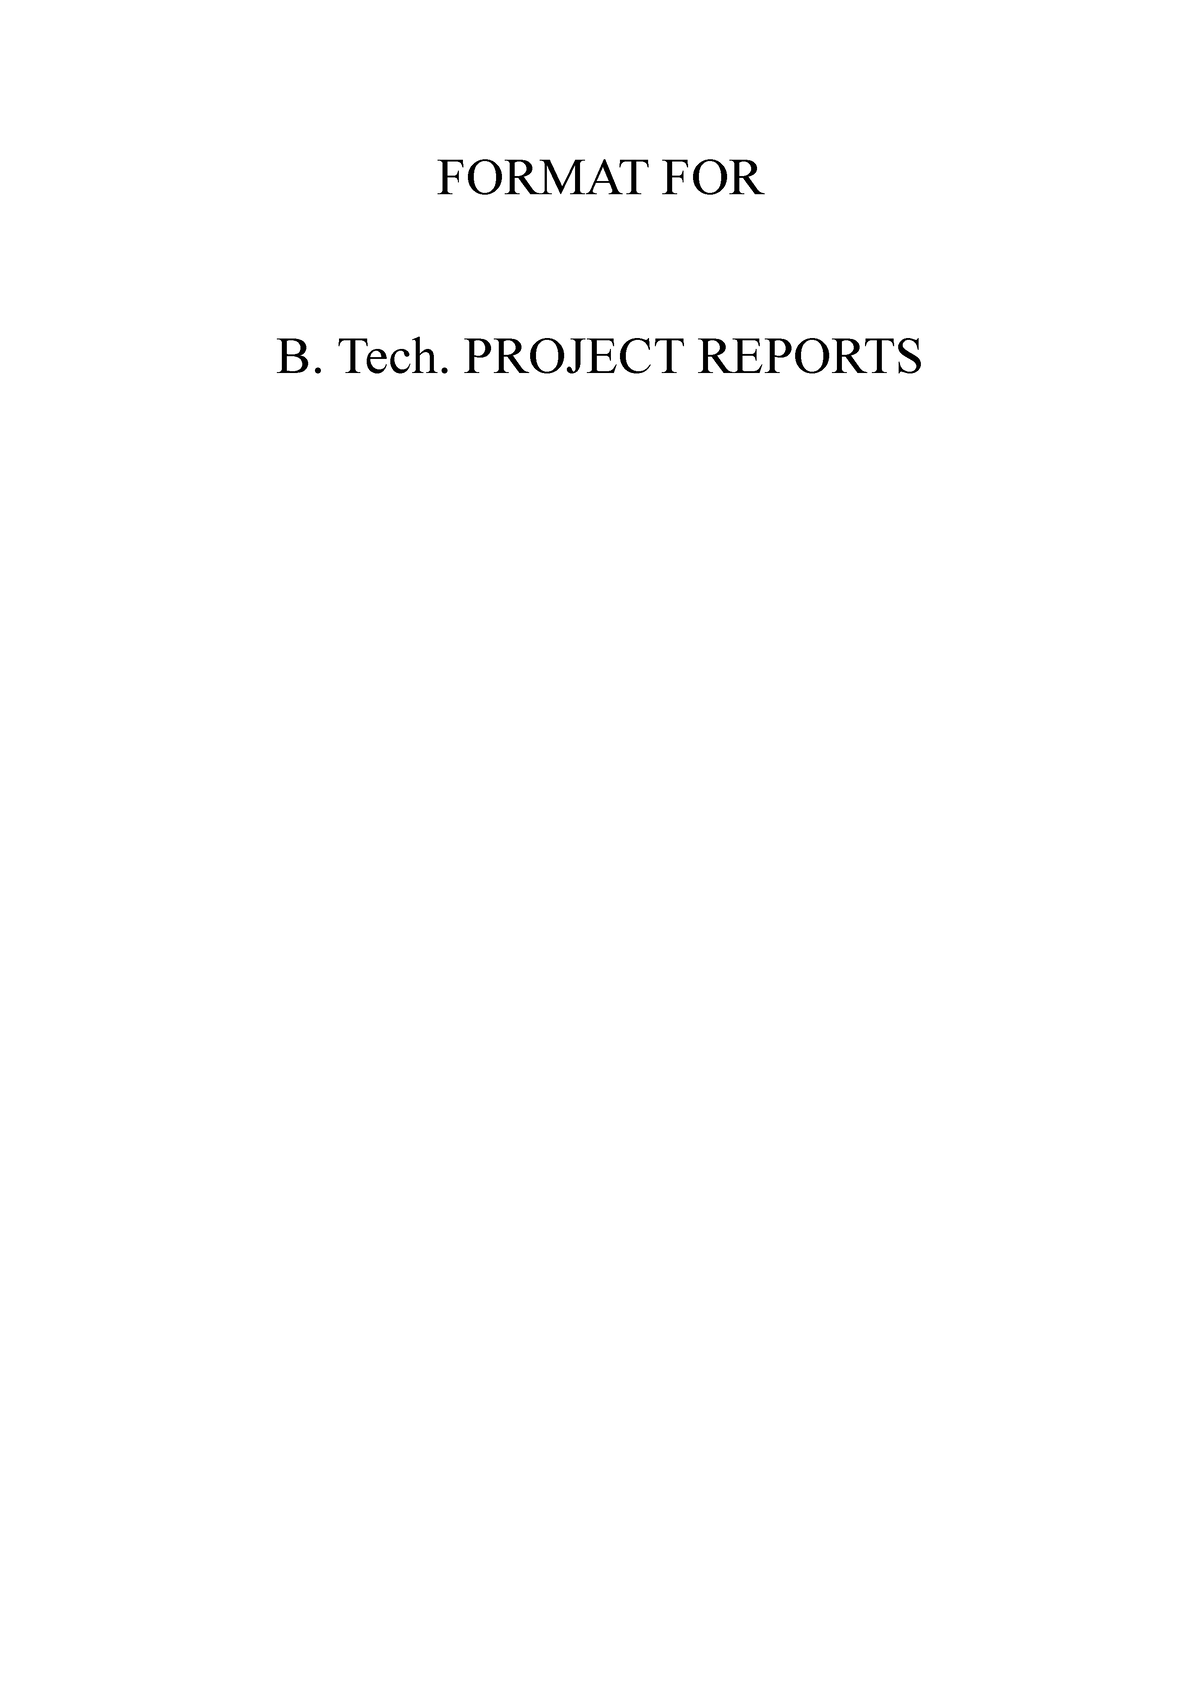 aktu m tech thesis format